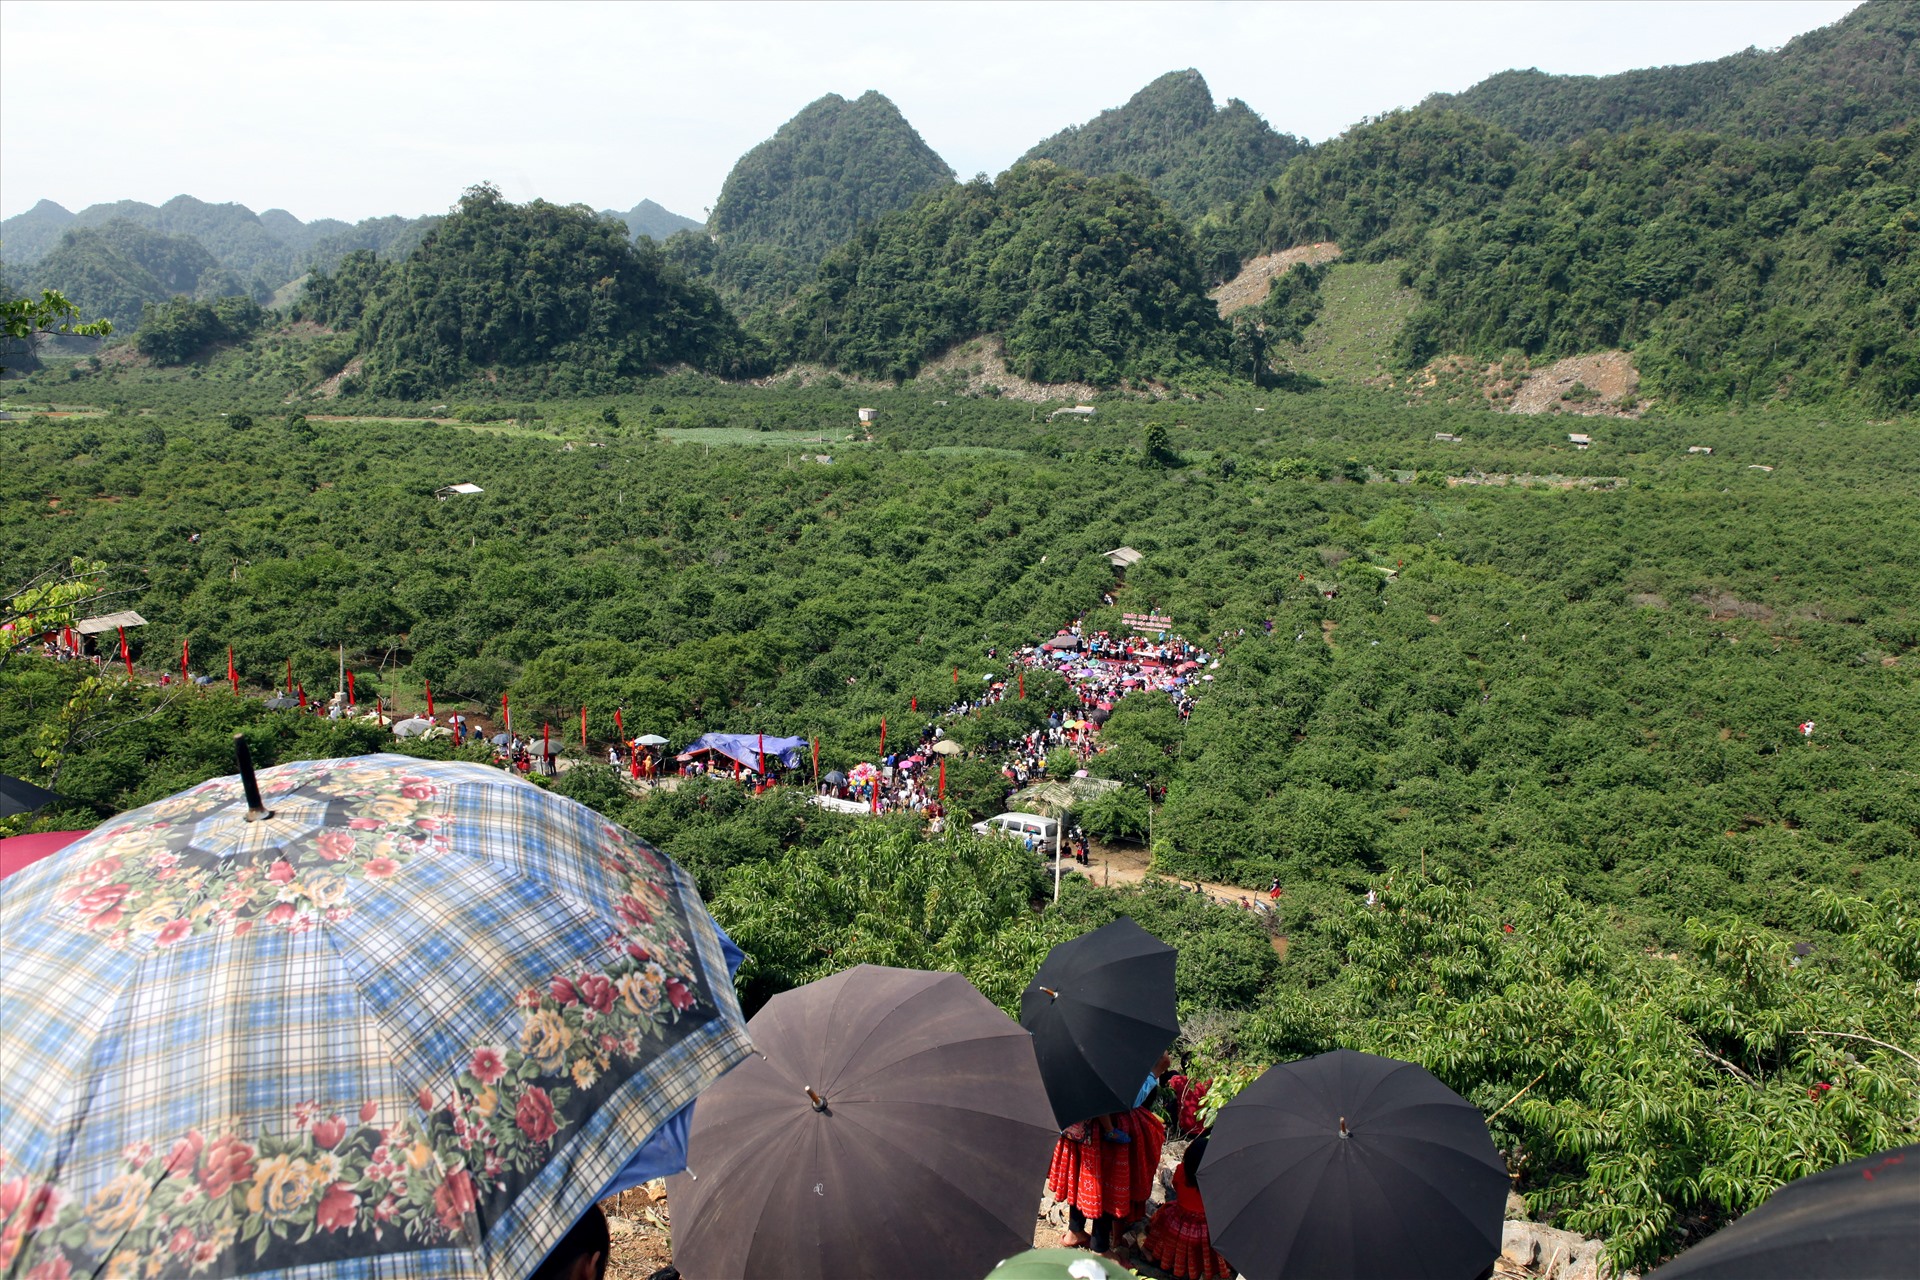 Ngày hội hái mận được tổ chức tại thung lũng Nà Ka (xã Tân Lập, huyện Mộc Châu) thu hút đông đảo du khách.